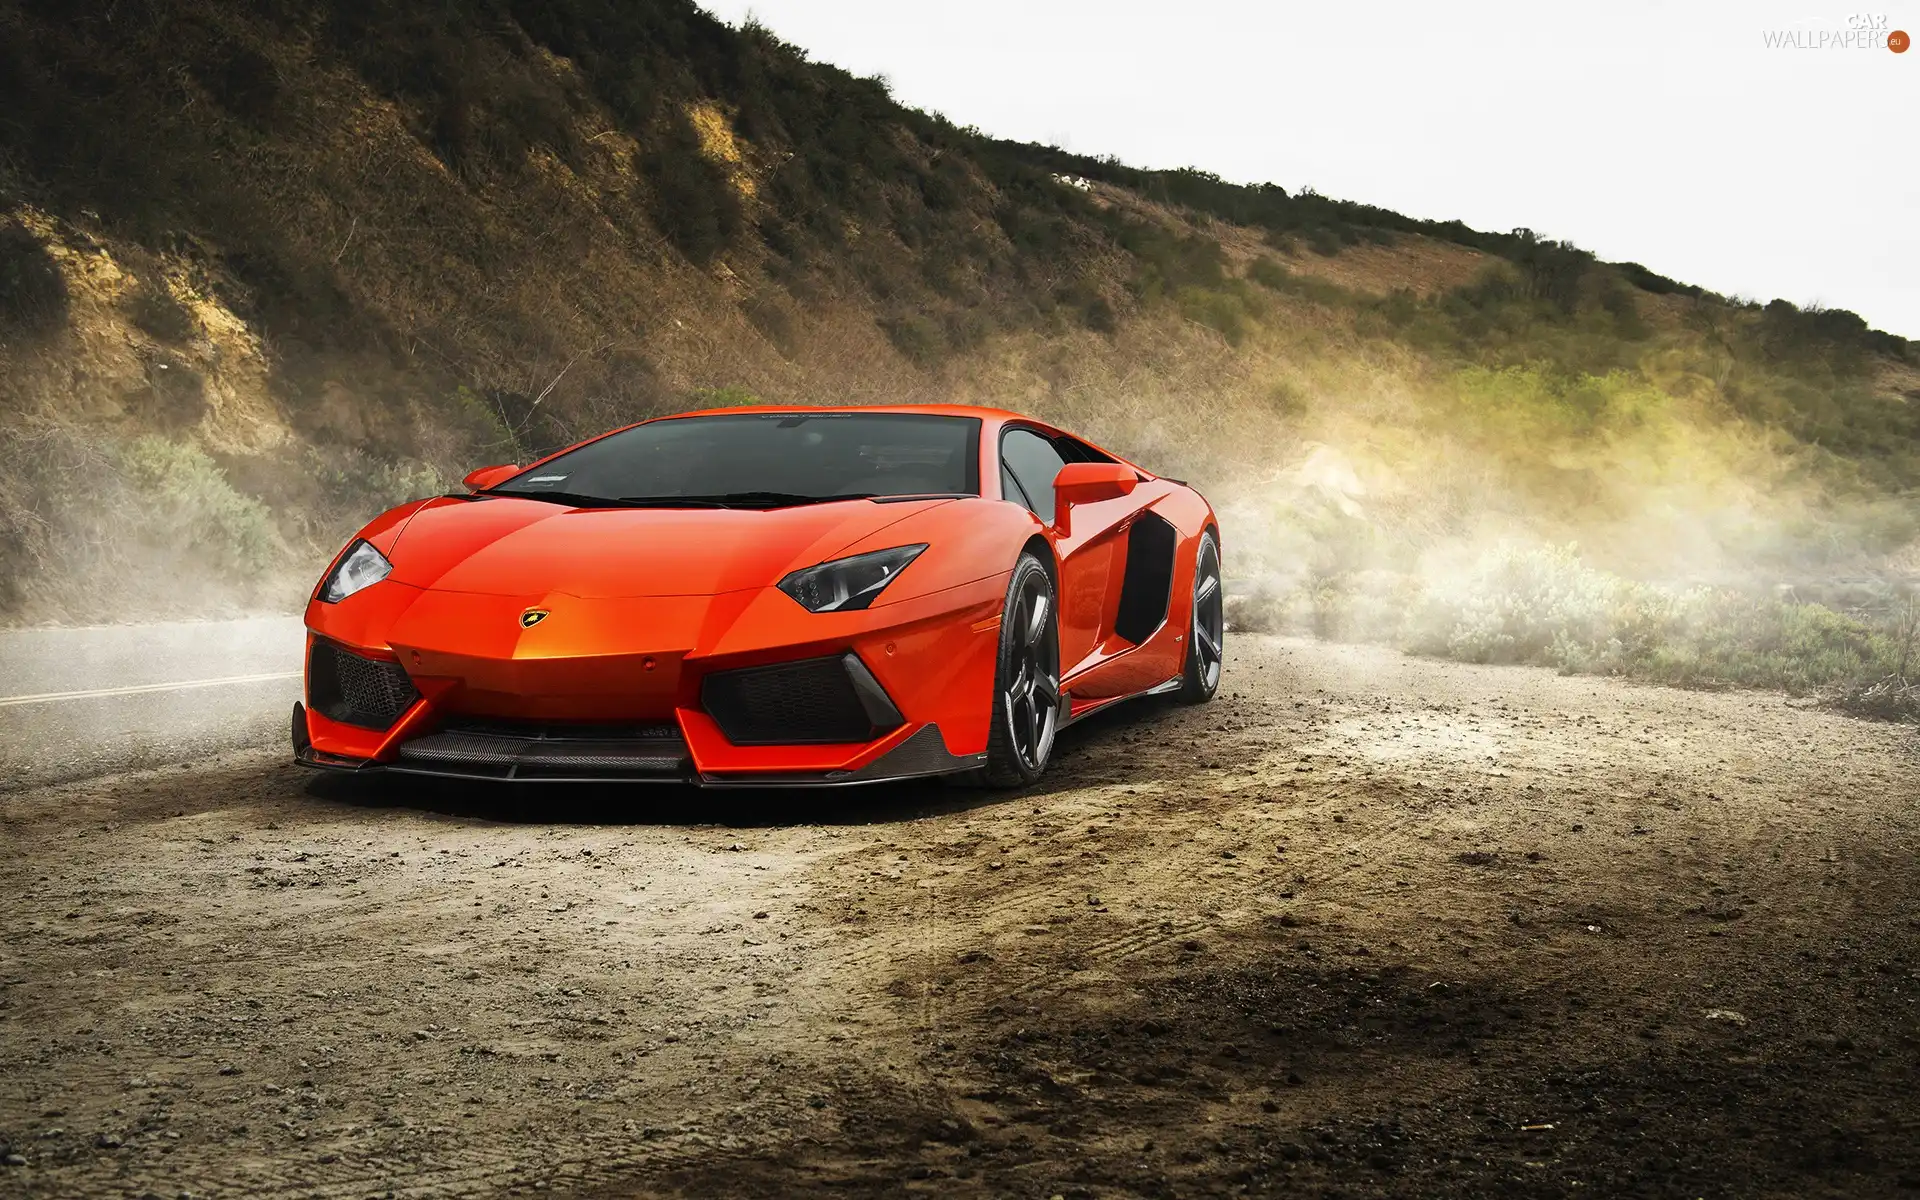 Lamborghini Aventador, Way